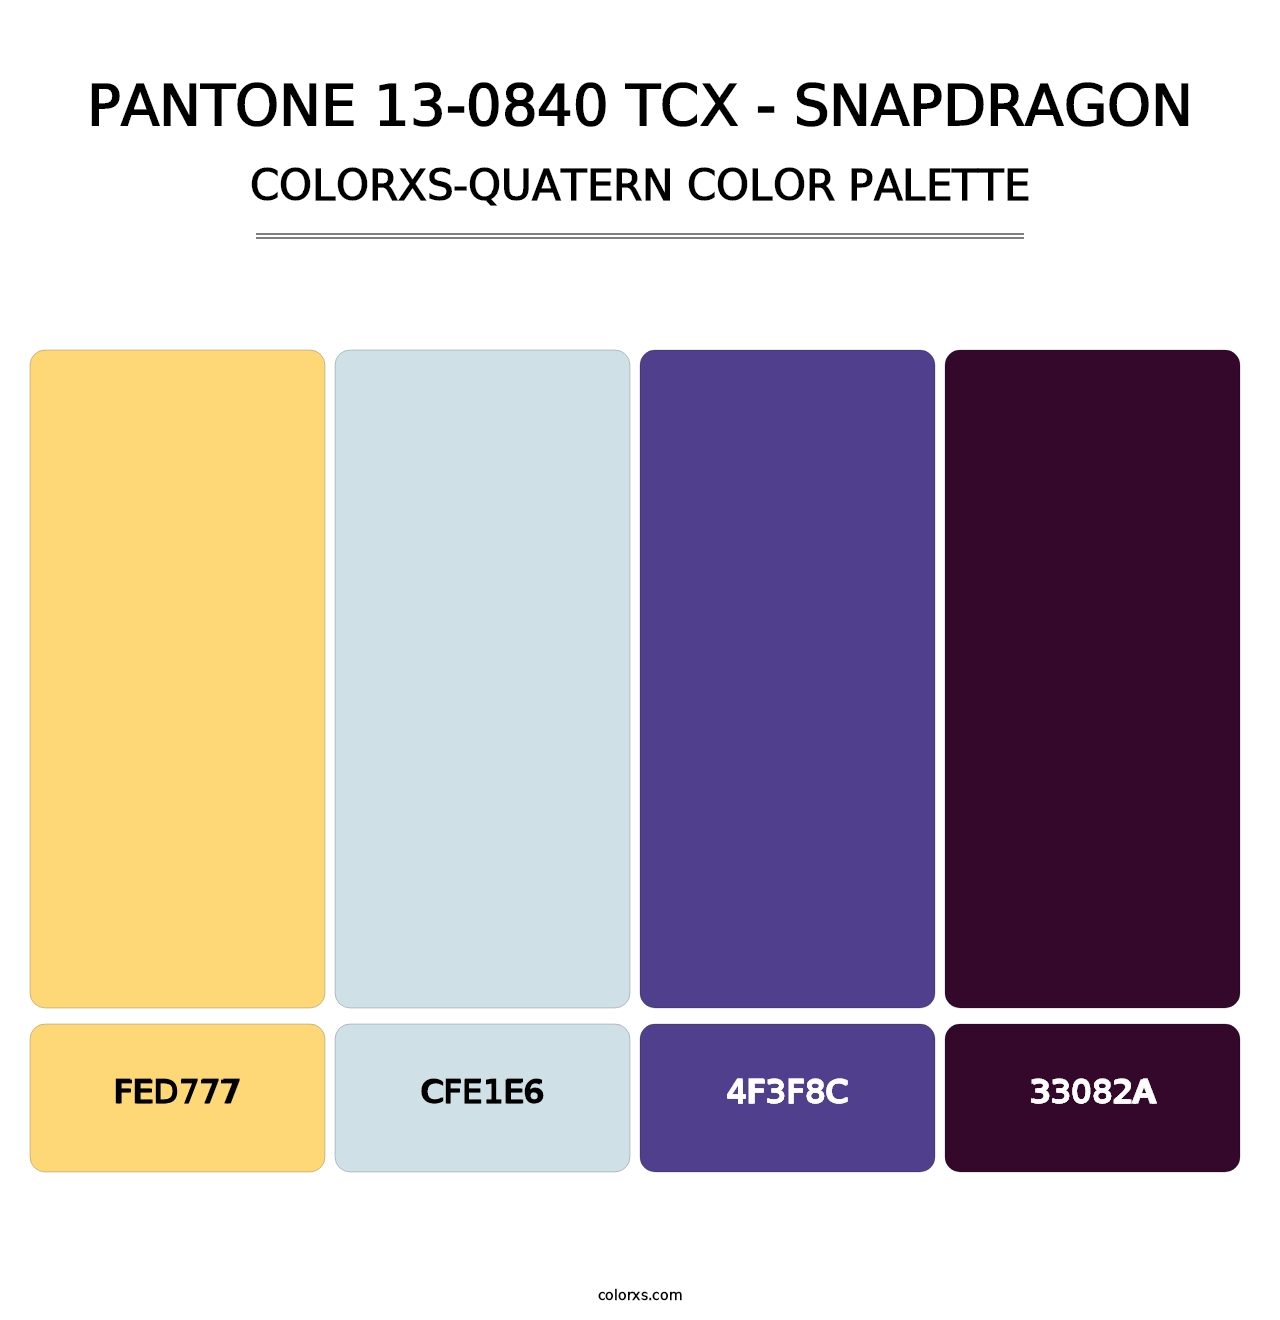 PANTONE 13-0840 TCX - Snapdragon - Colorxs Quatern Palette